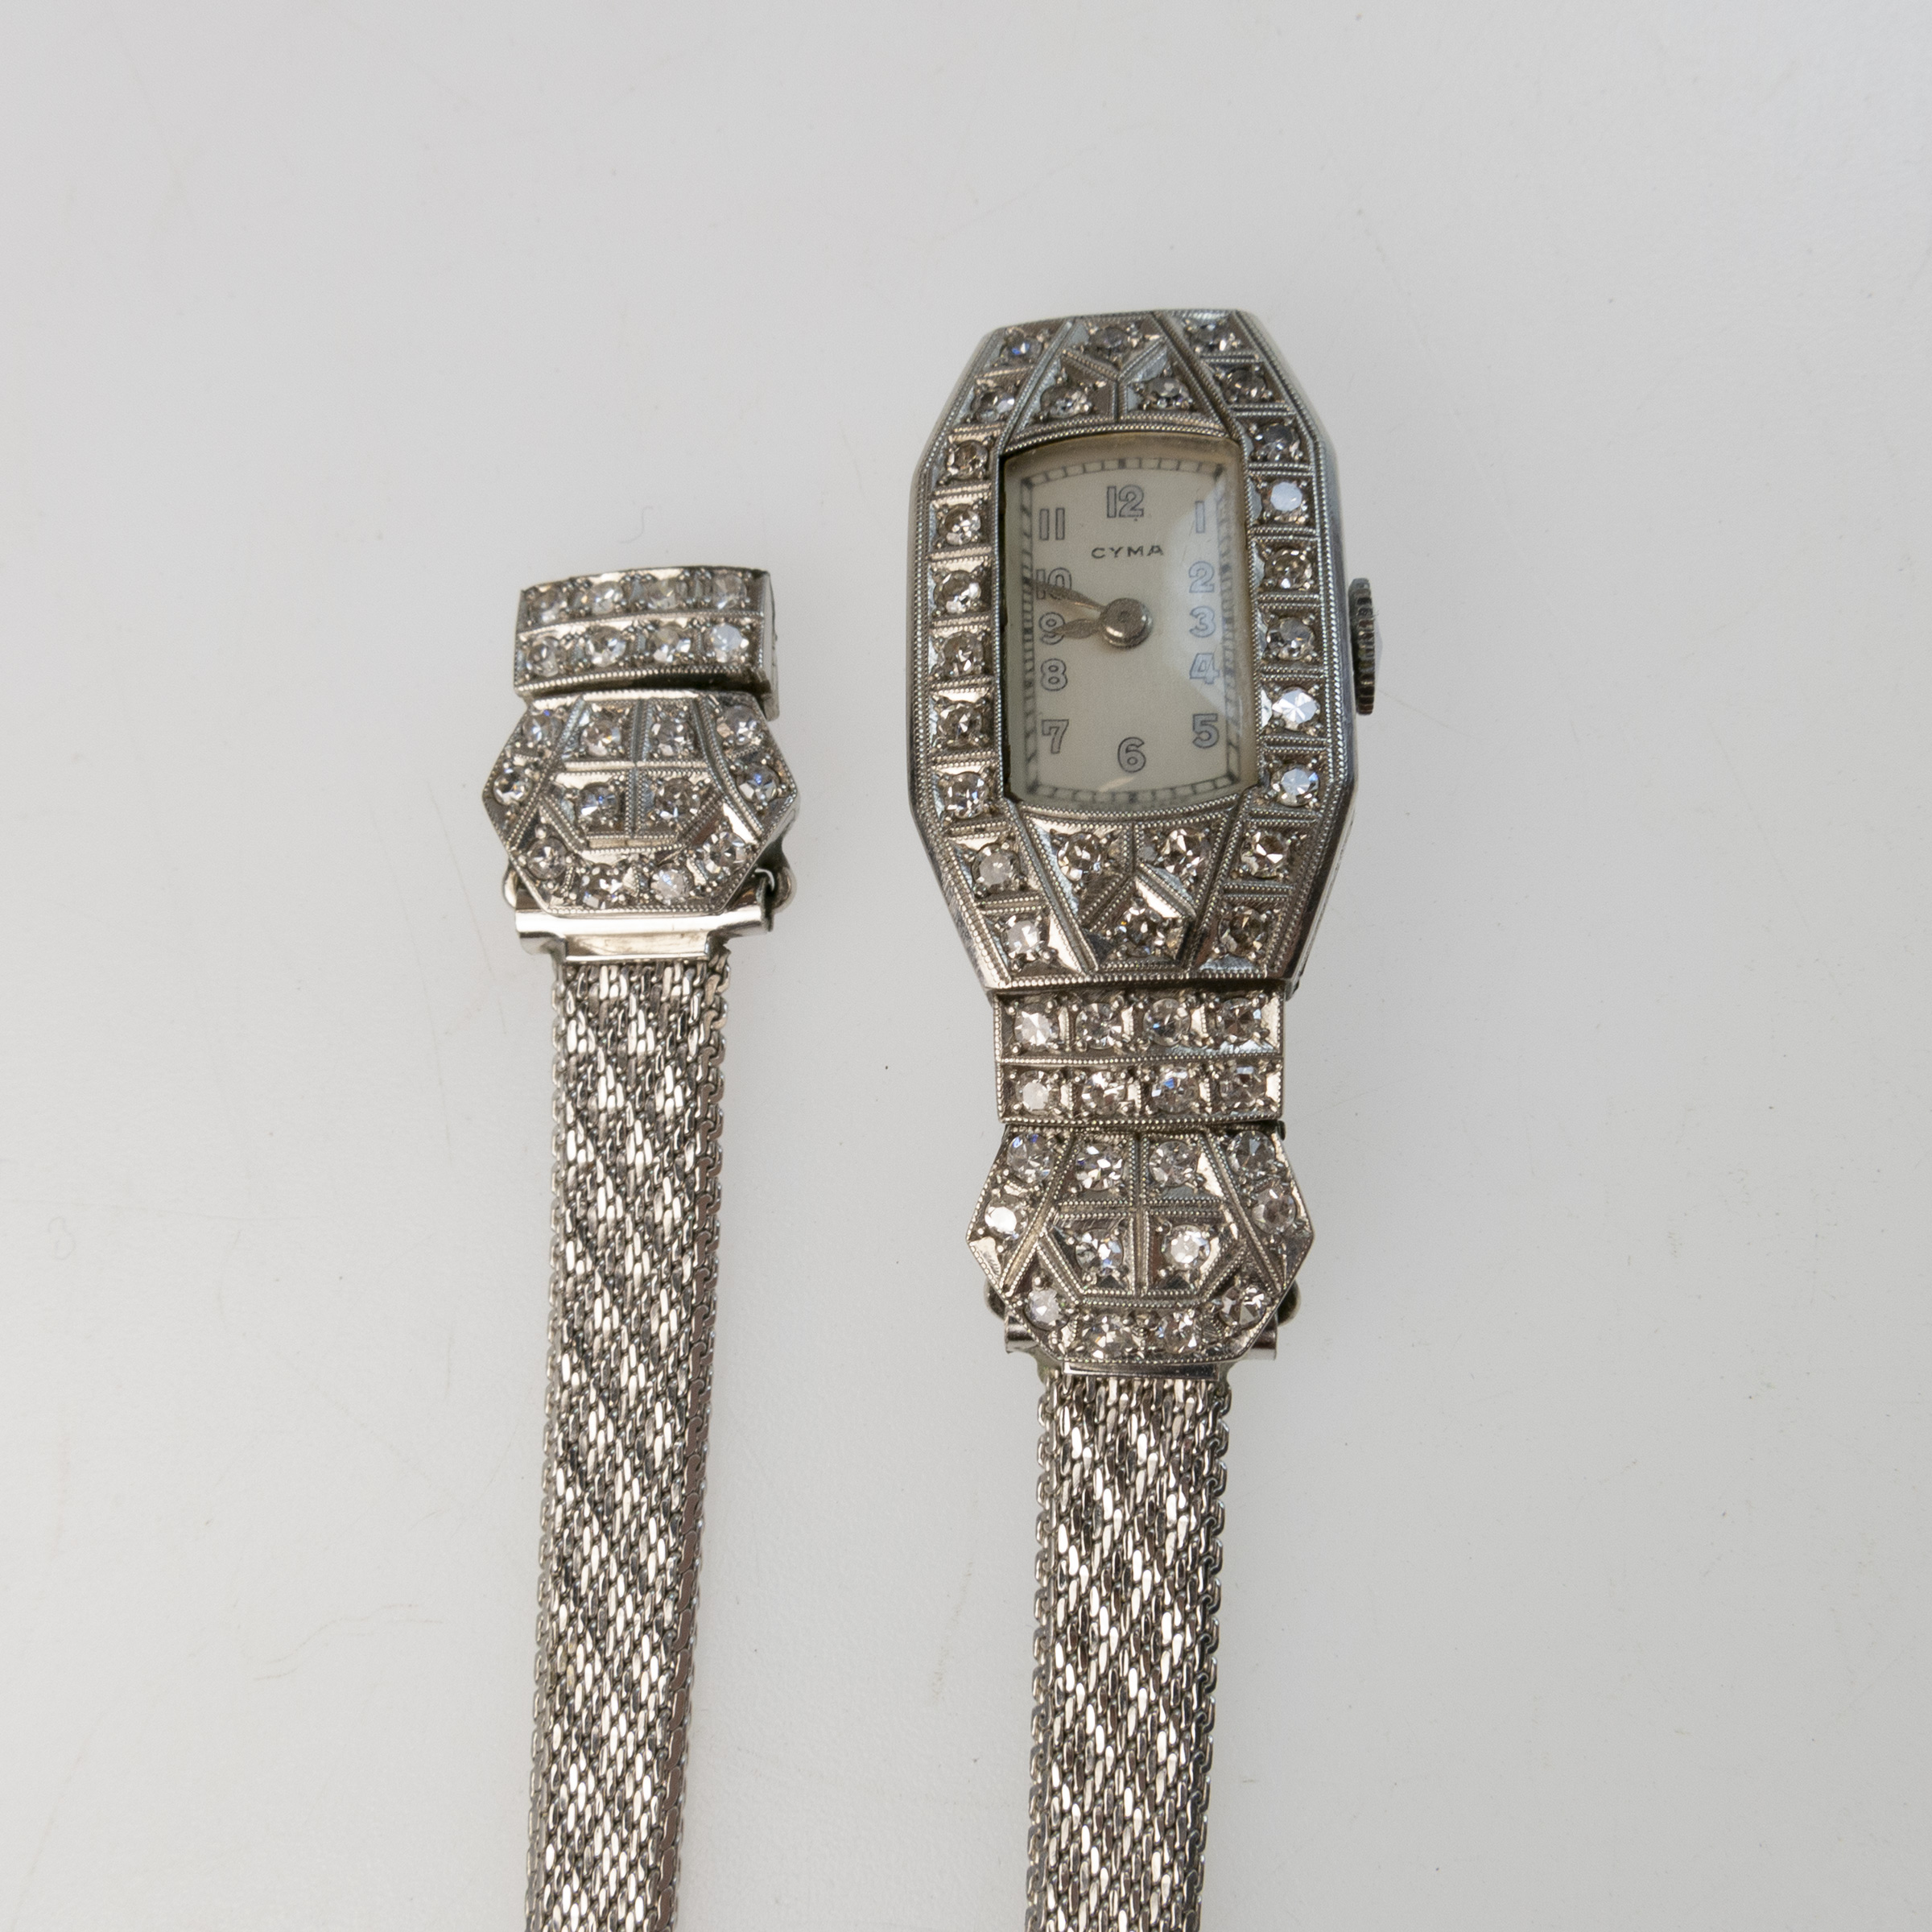 Lady's Cyma Art Deco Wristwatch